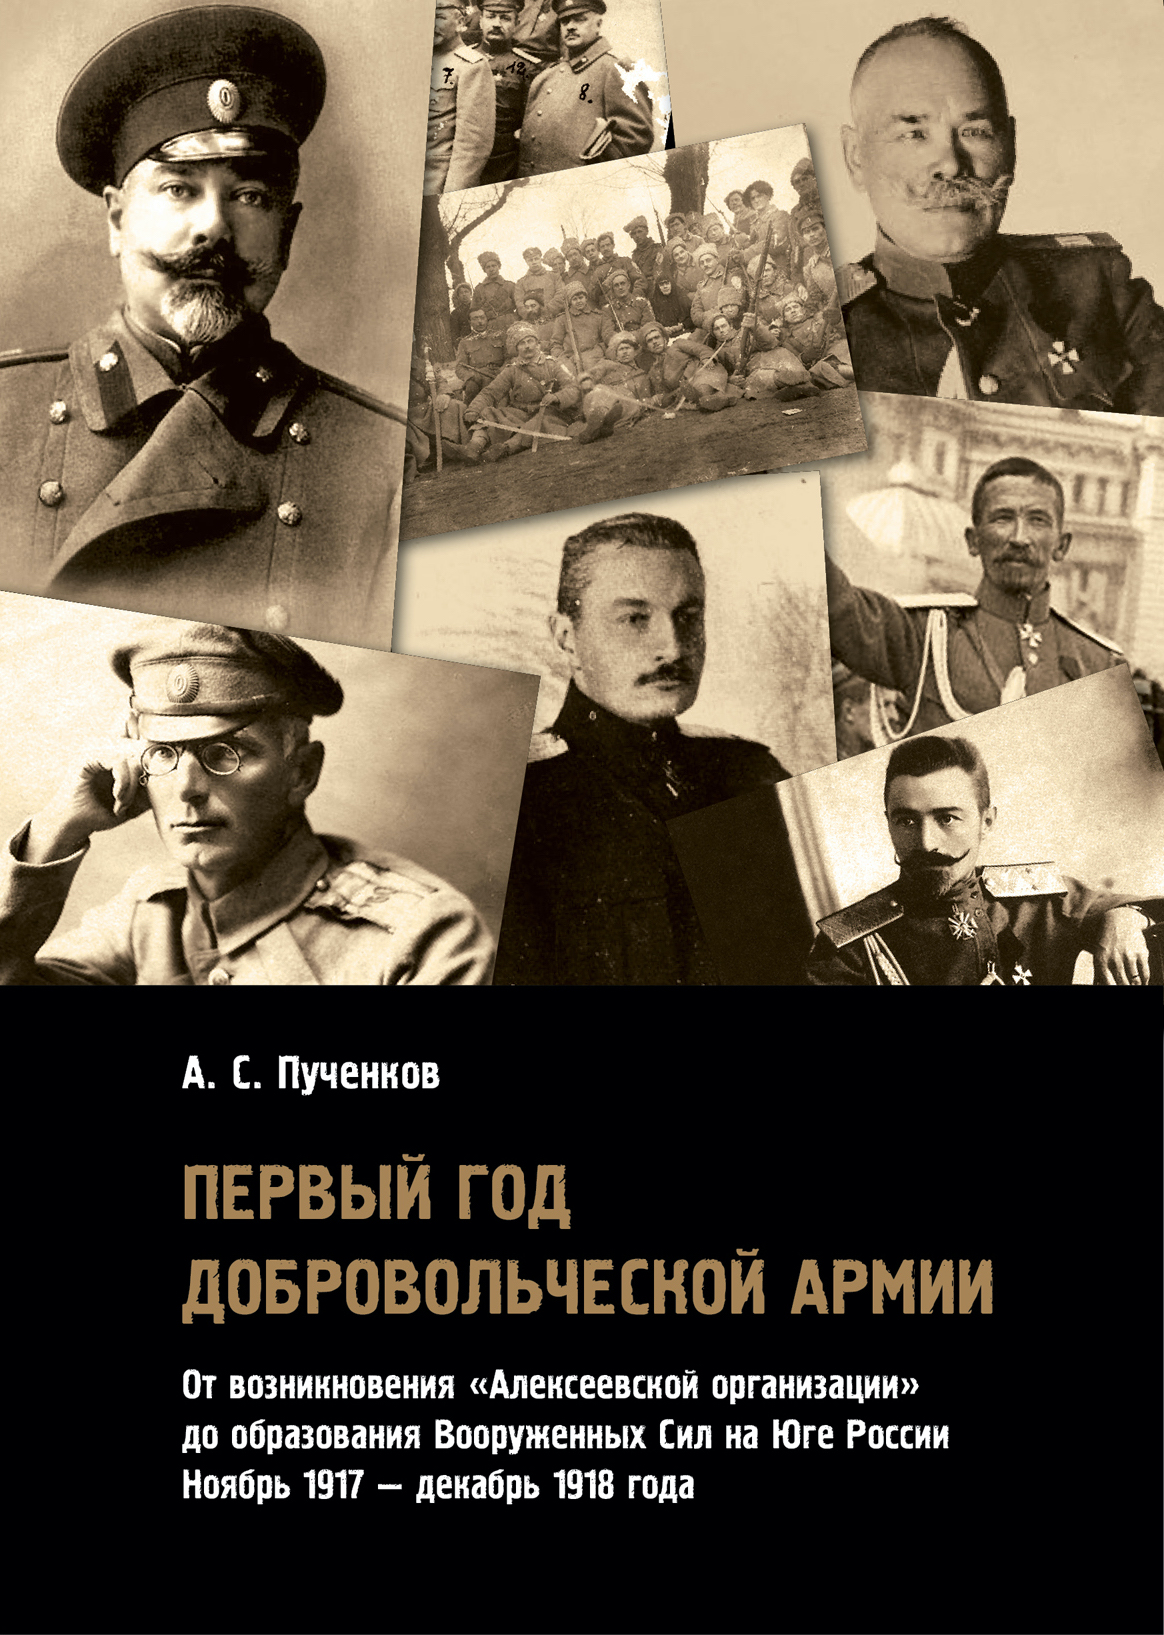 Первый год Добровольческой армии: от возникновения «Алексеевской организации» до образования Вооруженных сил на Юге России (ноябрь 1917 — декабрь 1918 года)